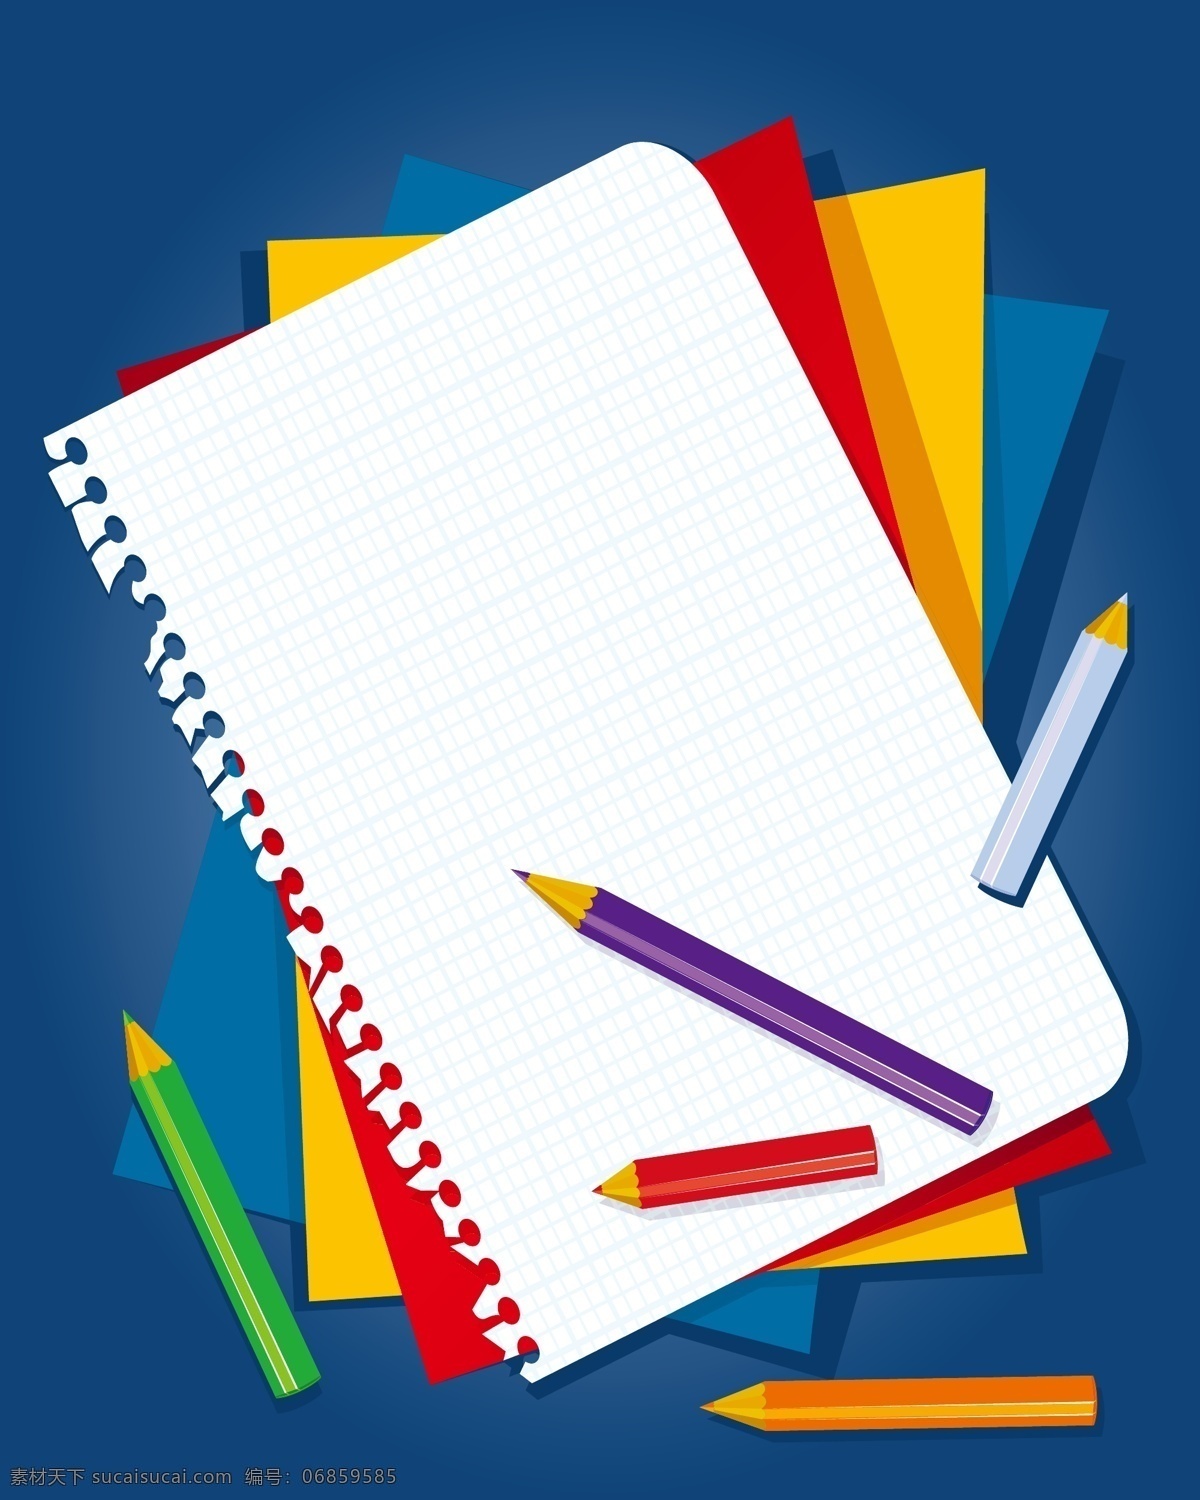 矢量 教育 铅笔 笔记本 背景 教师节 蓝色 立体 书写 纸张